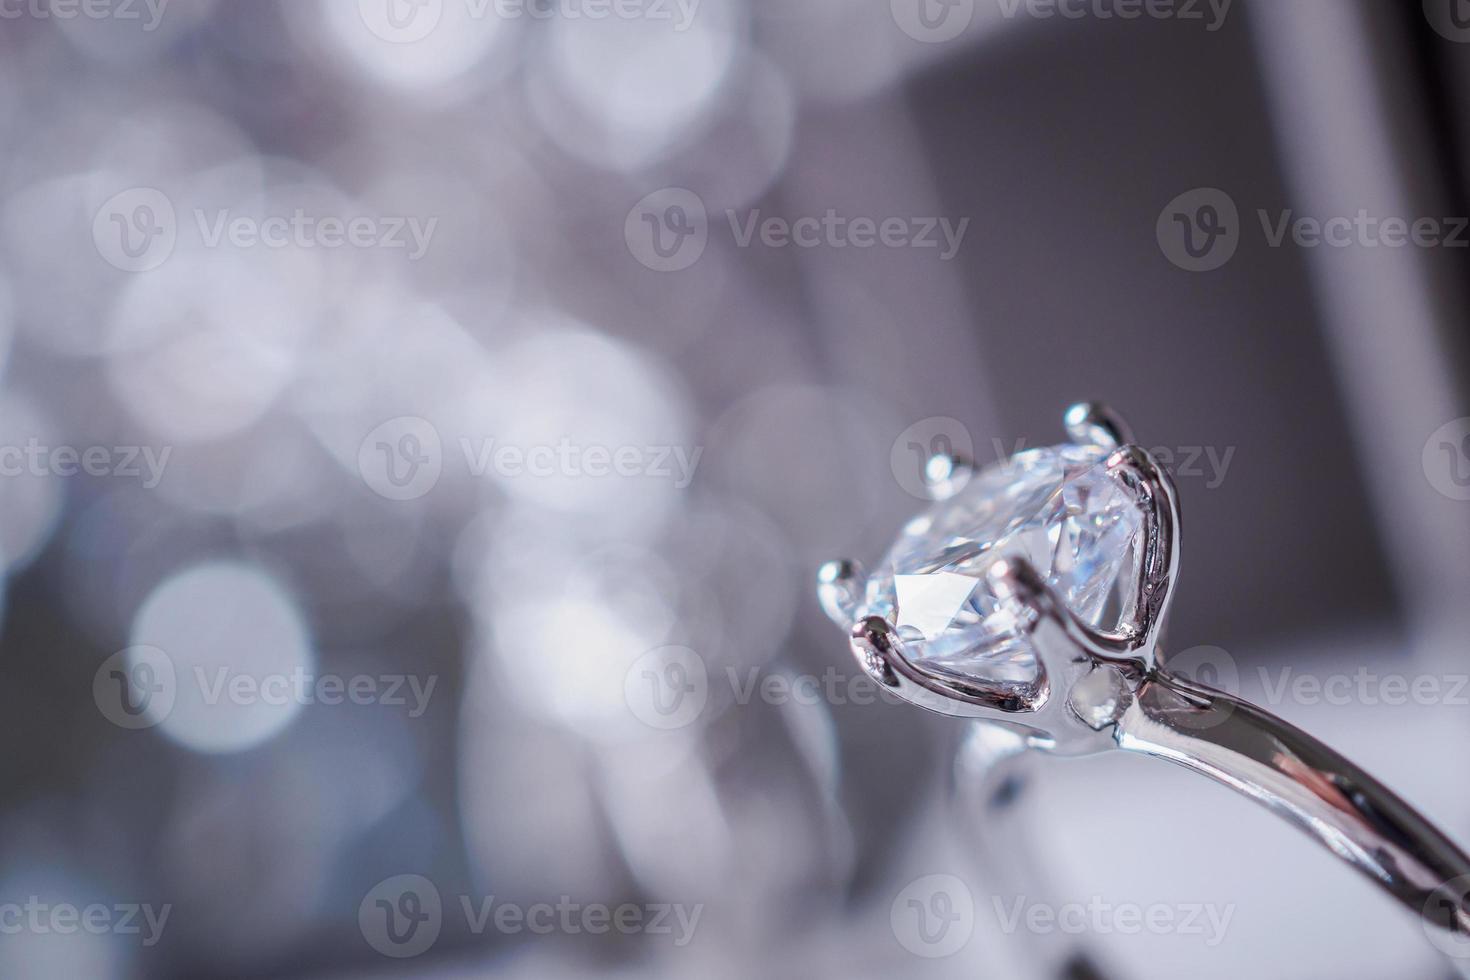 luxe verloving diamant ring in sieraden geschenk doos met bokeh licht achtergrond foto